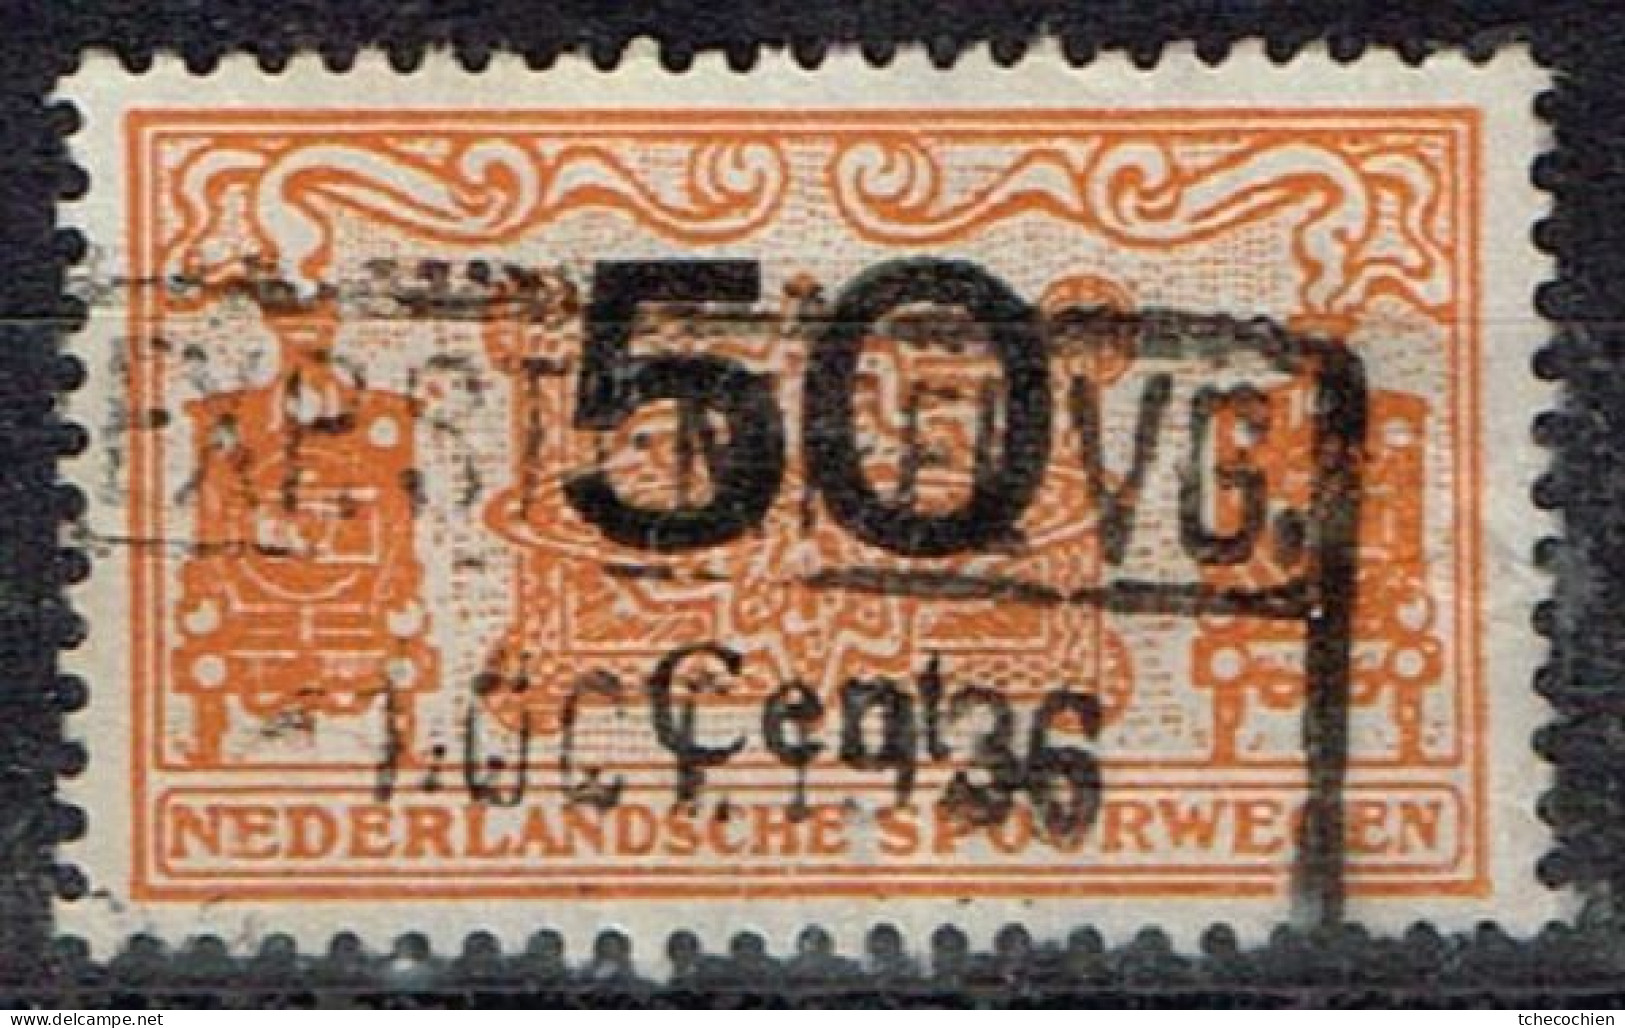 Pays-Bas - Nederlandsche Spoorwegen - Cancel OCT 1936 - Railway